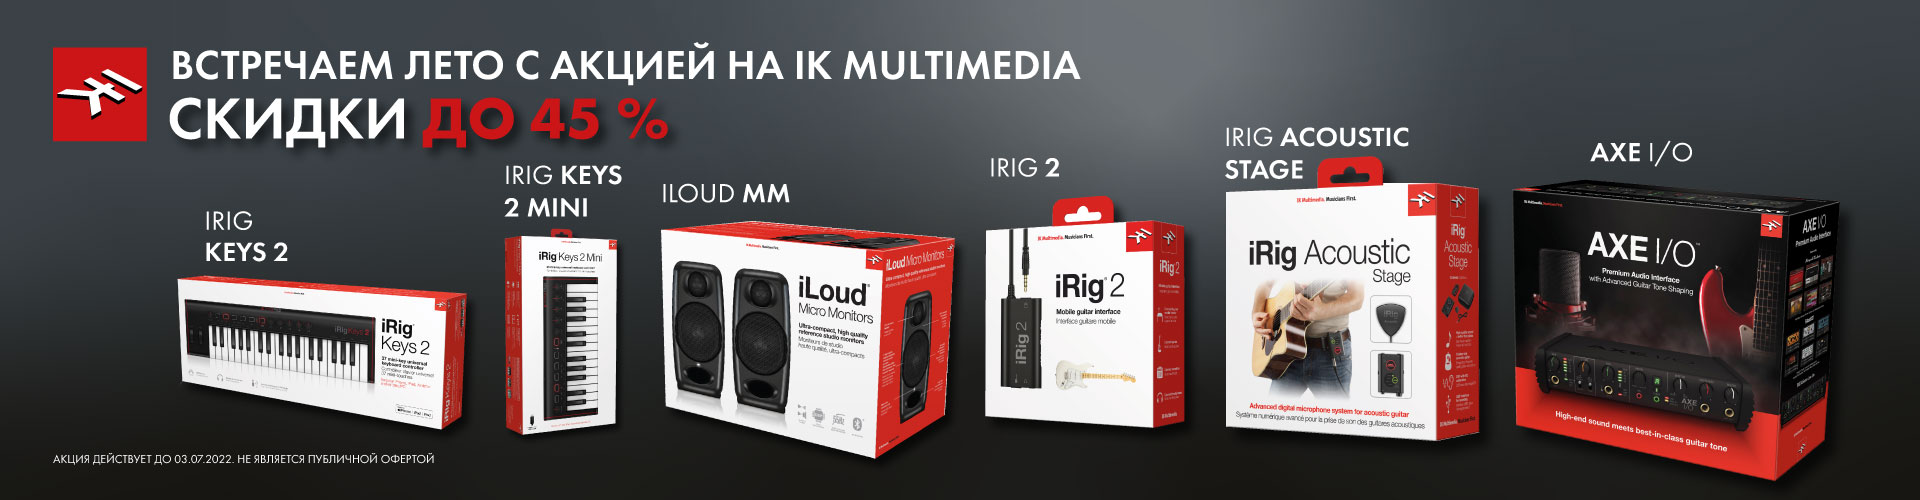 Скидка на товары бренда IK Multimedia до 45%